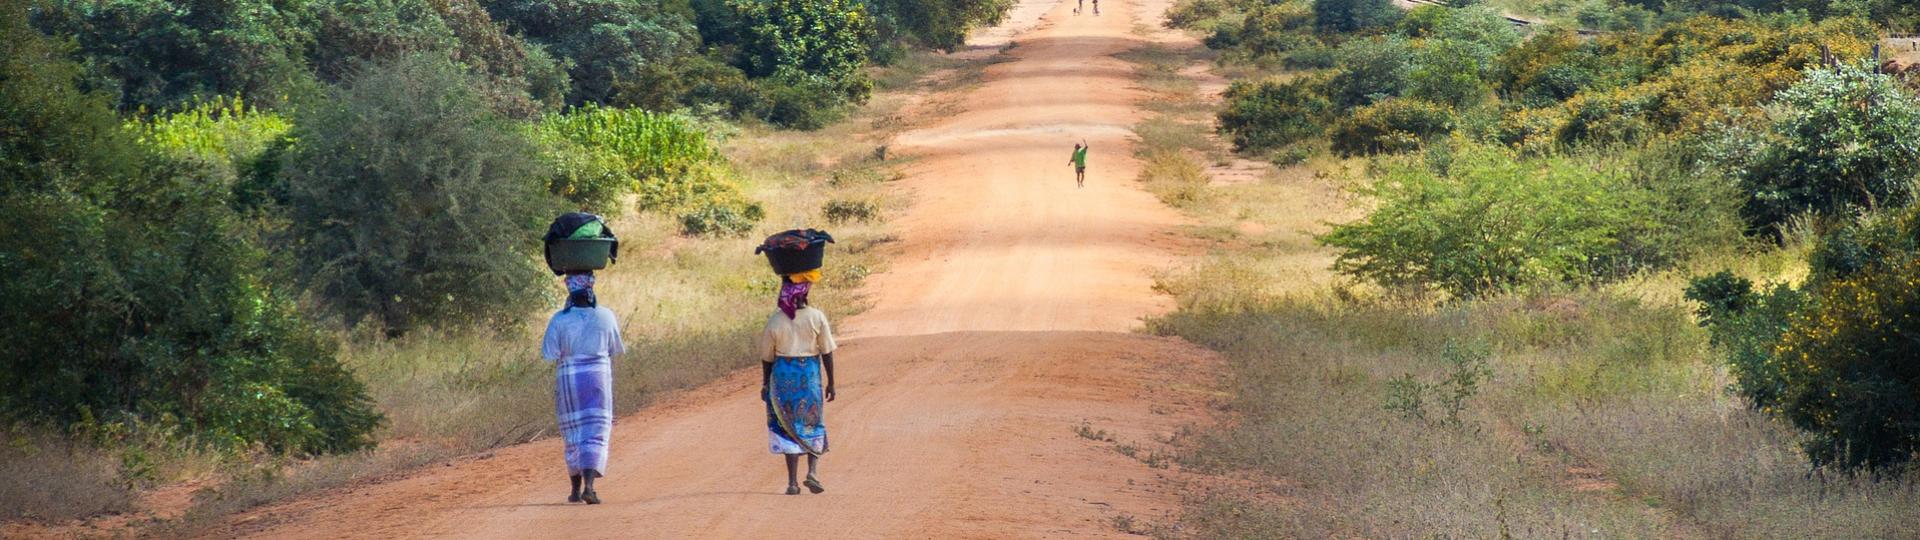 African women walking along road